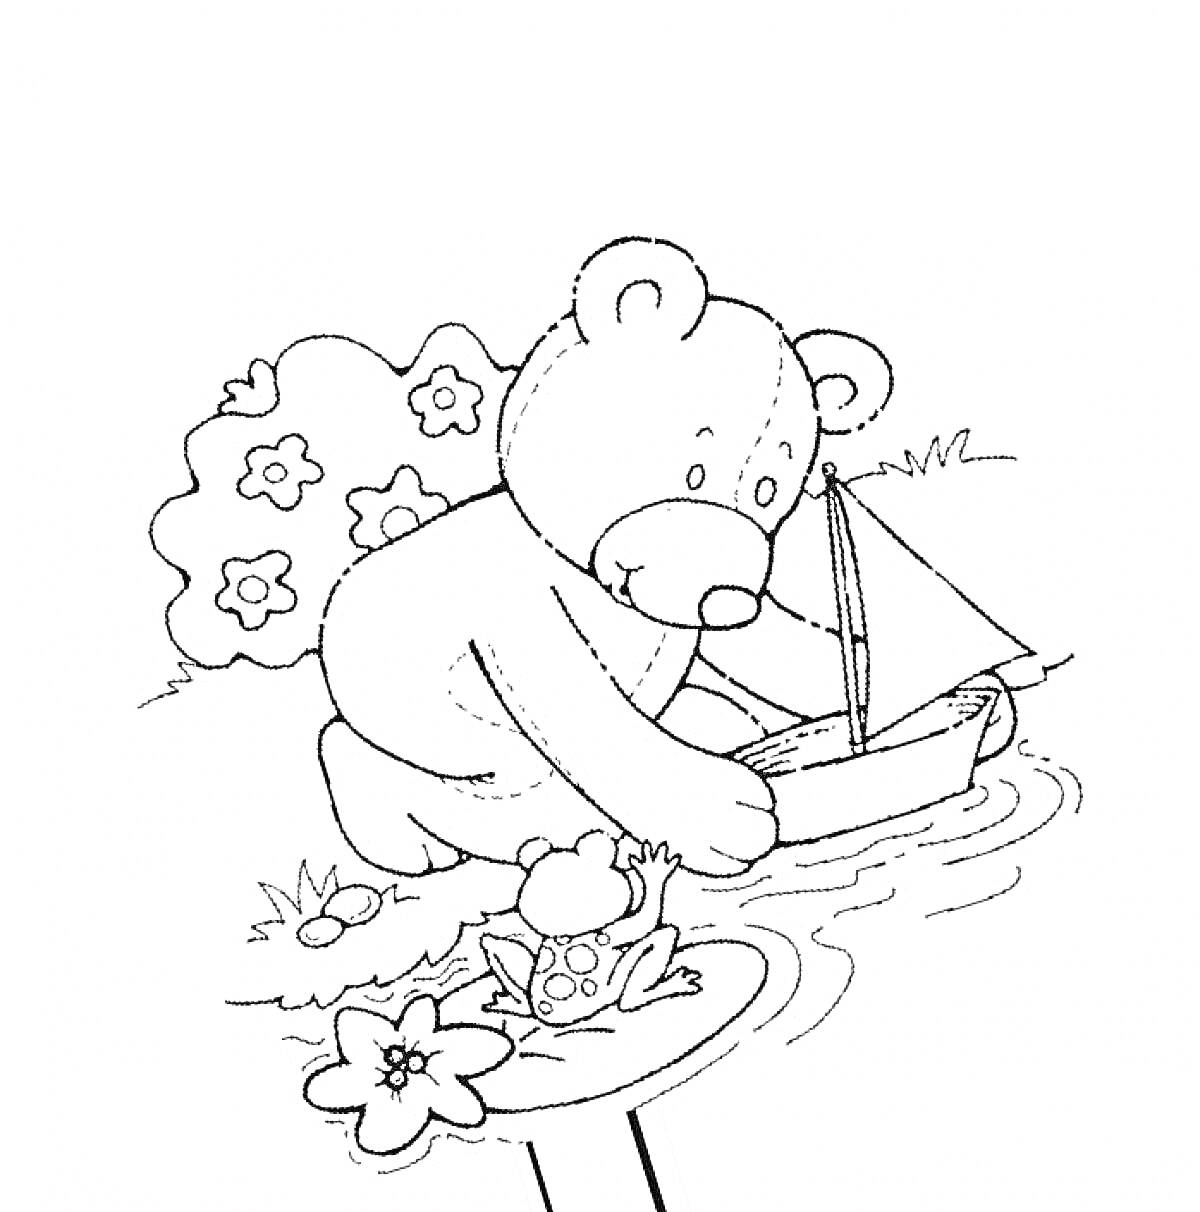 Мишка Тедди играет с корабликом в пруду рядом с лягушкой и цветами